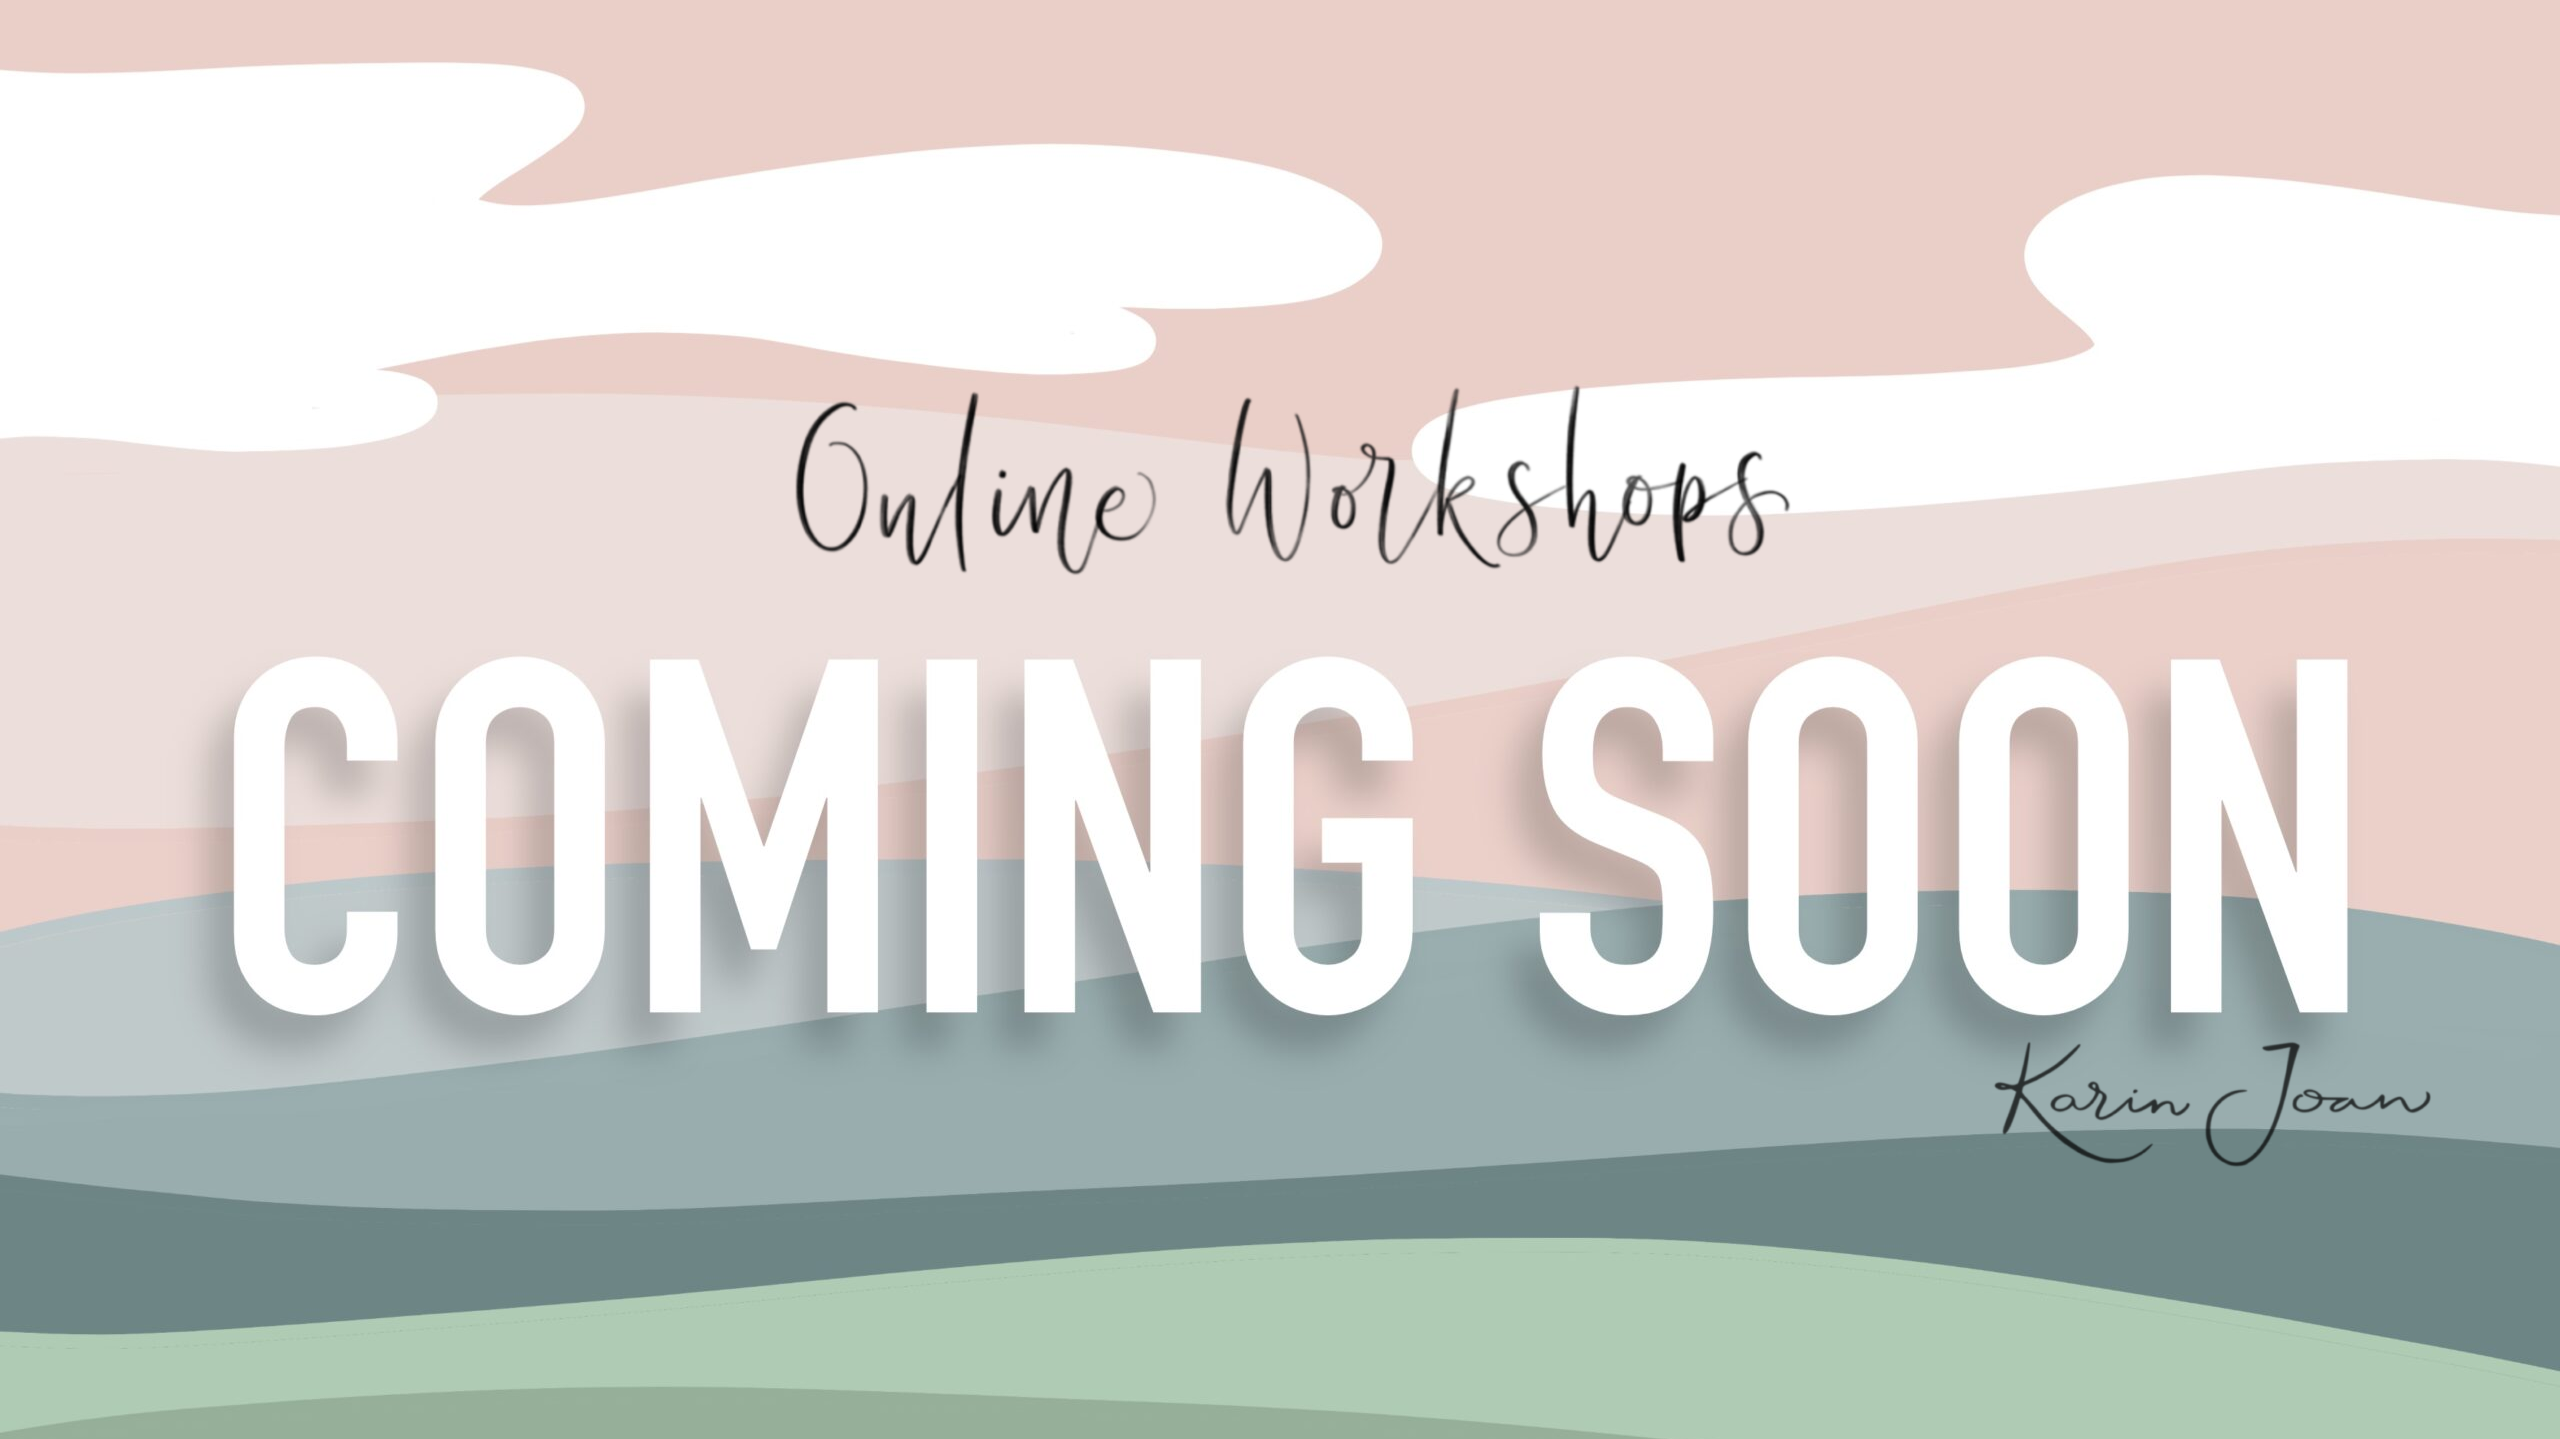 Abstract Landscape met pastelkleuren en de woorden Online Workshop, Coming Soon, Karin Joan